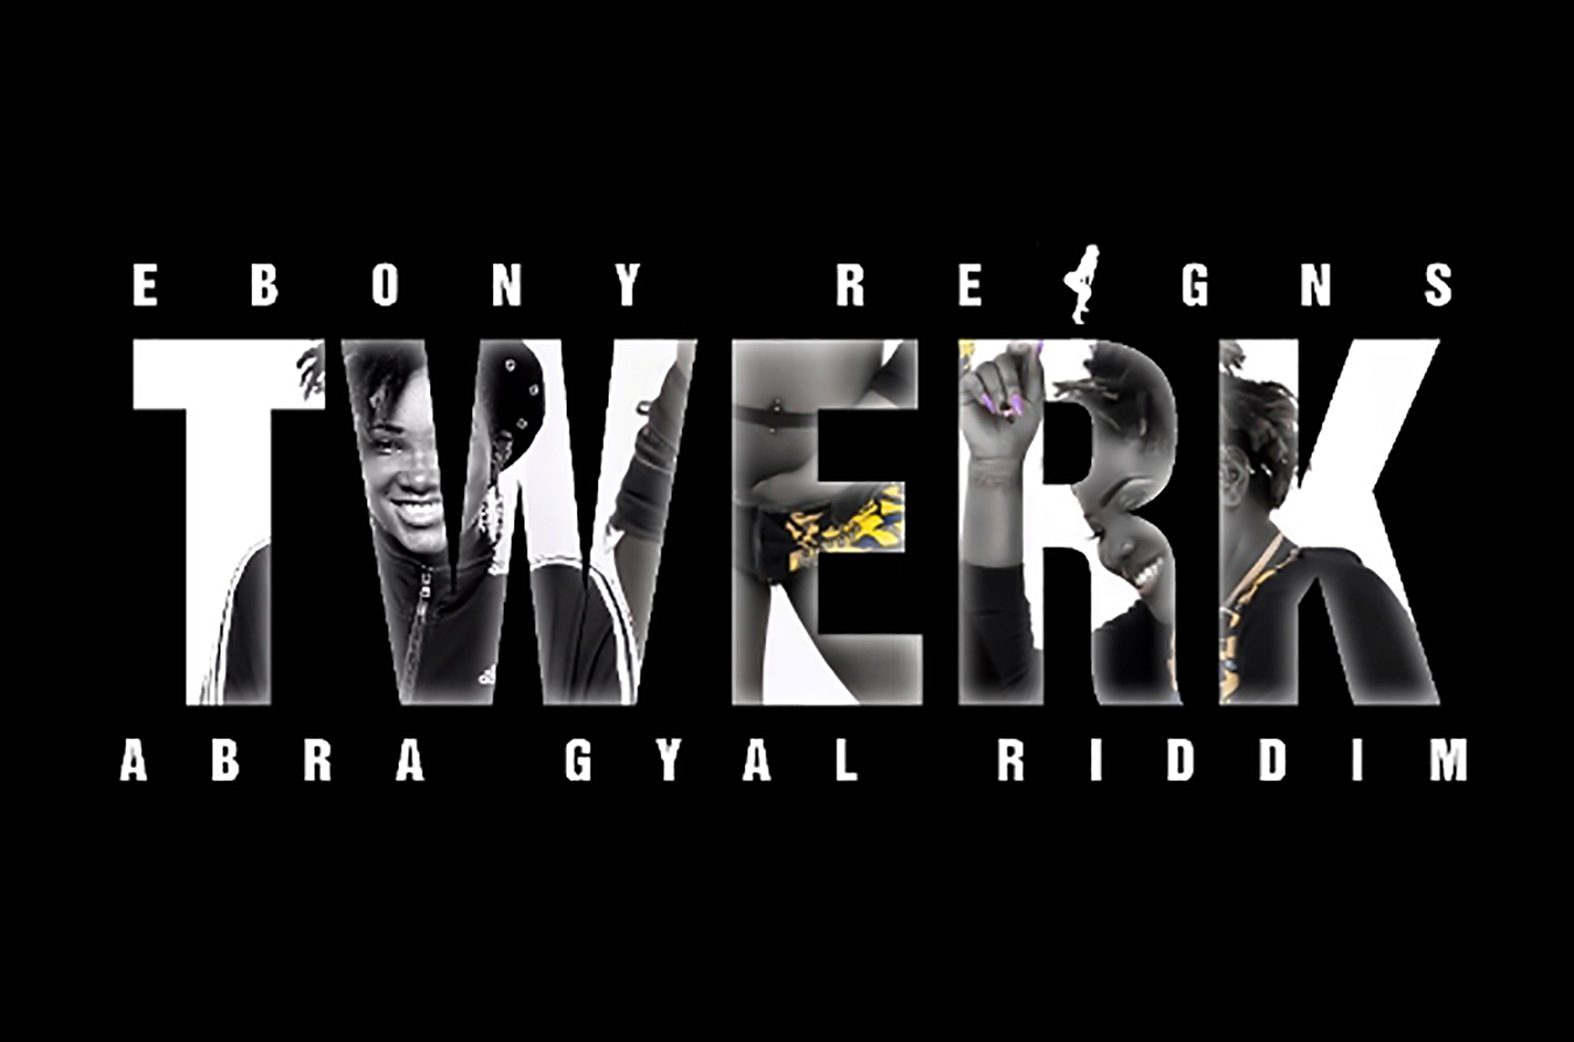 Ebony Reigns - Abra Gyal Riddim